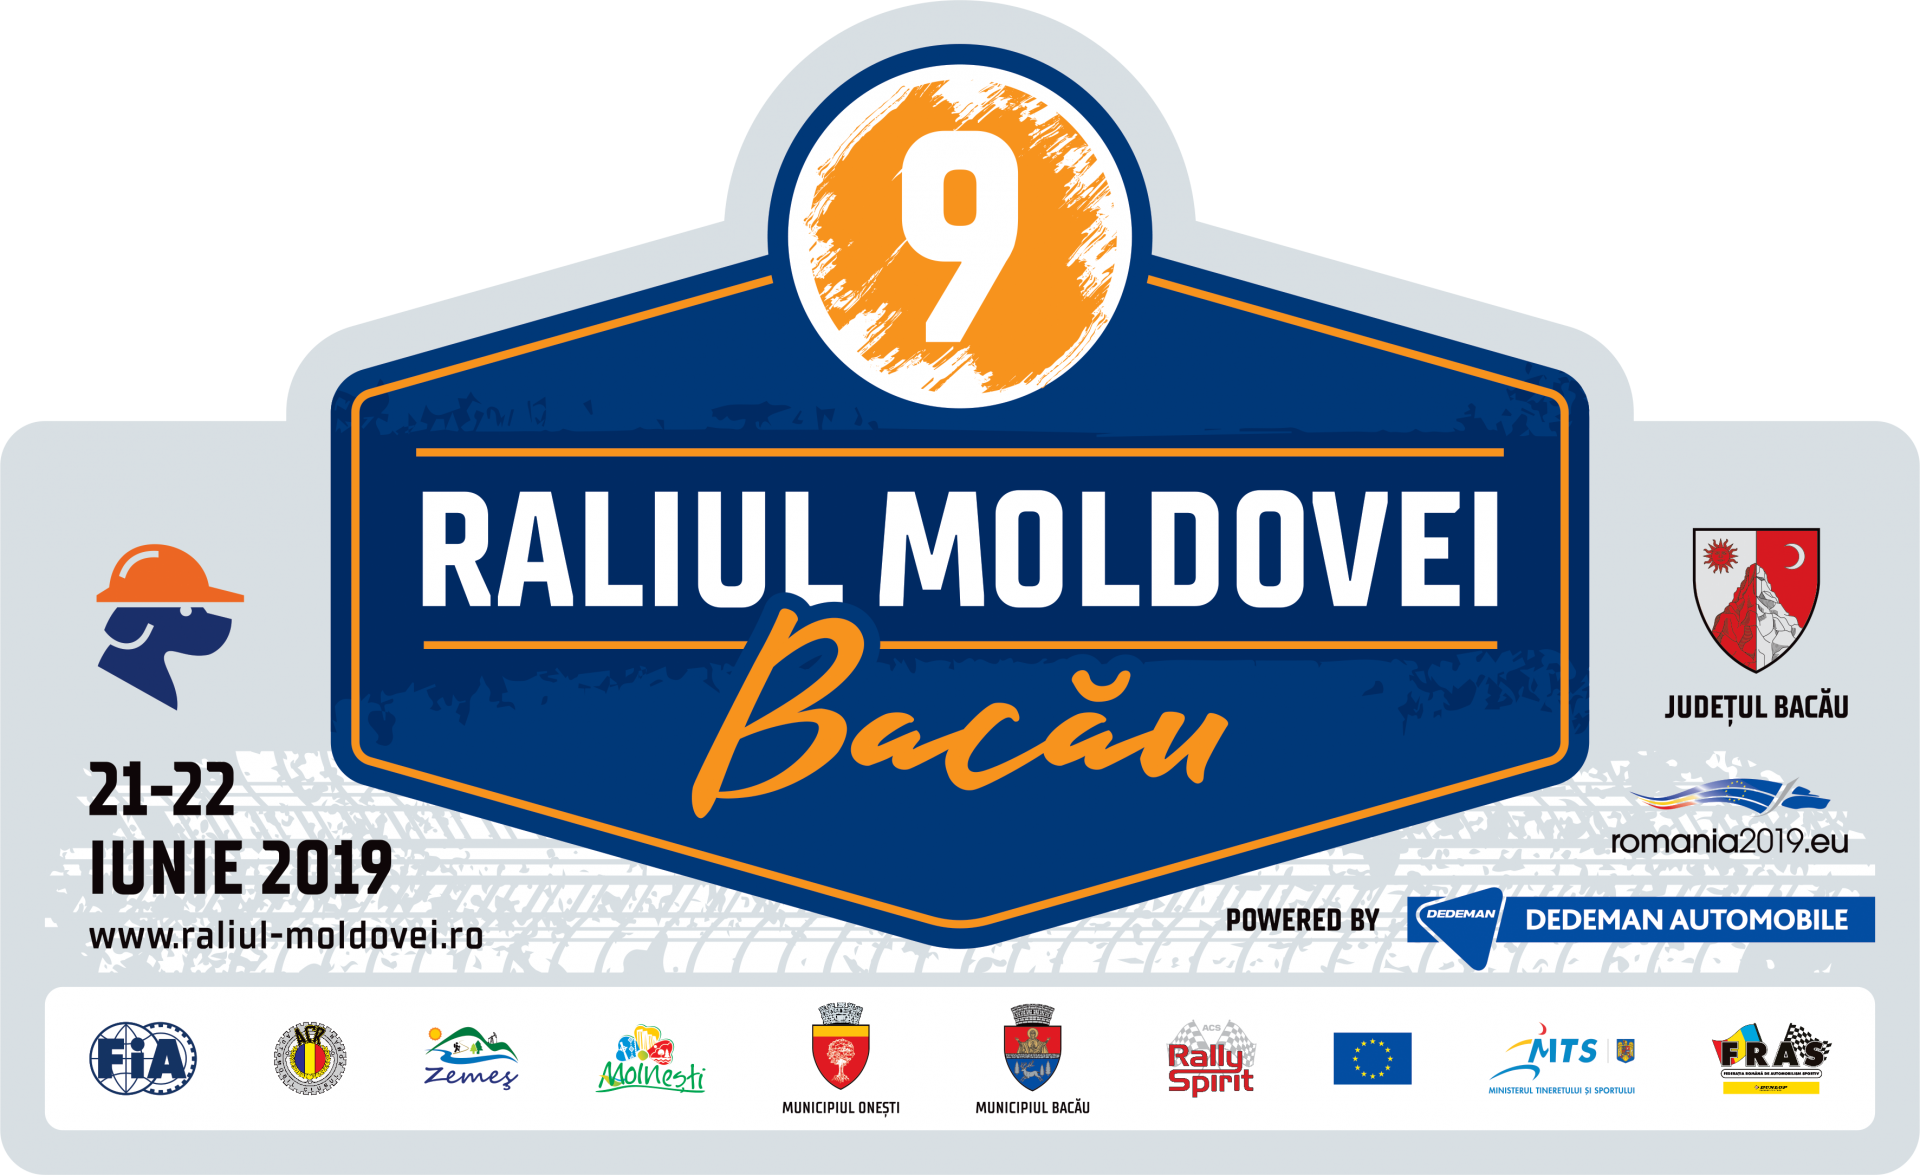 10 ore de transmisiuni televizate pentru Raliul Moldovei Bacau powered by Dedeman Automobile